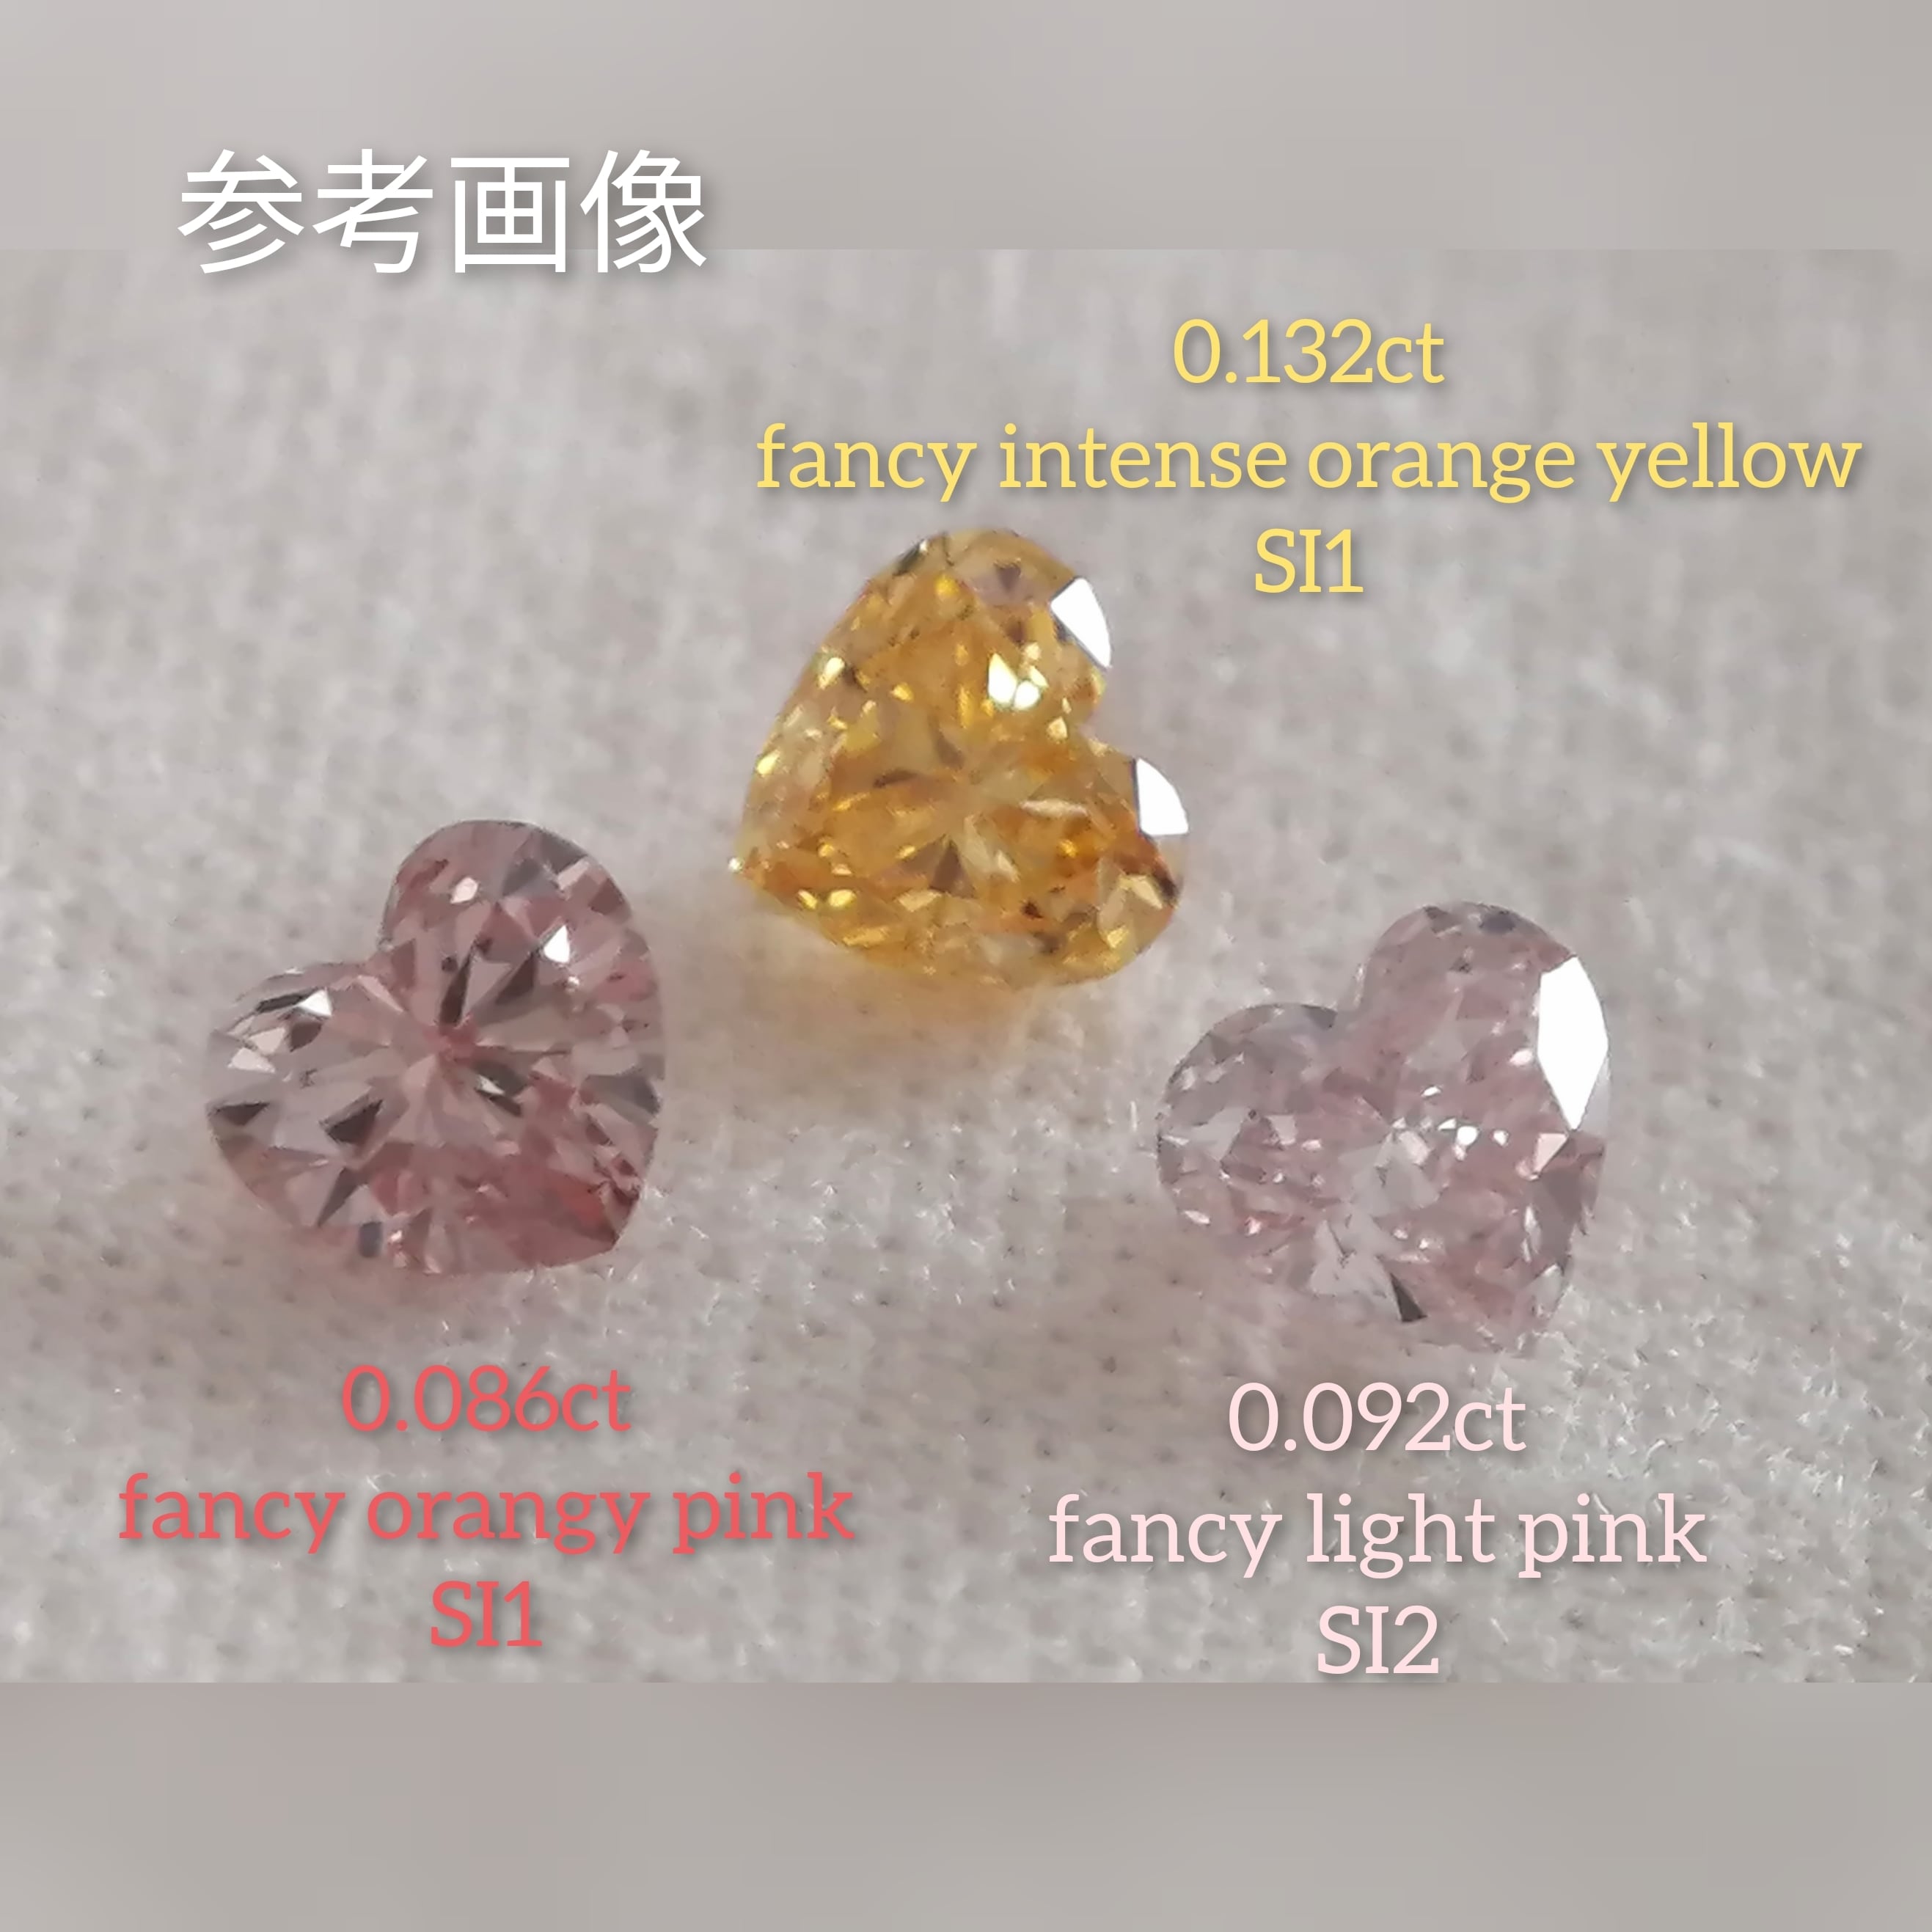 歳末SALE～12/31迄】ピンクダイヤモンドルース 0.092ct fancy light